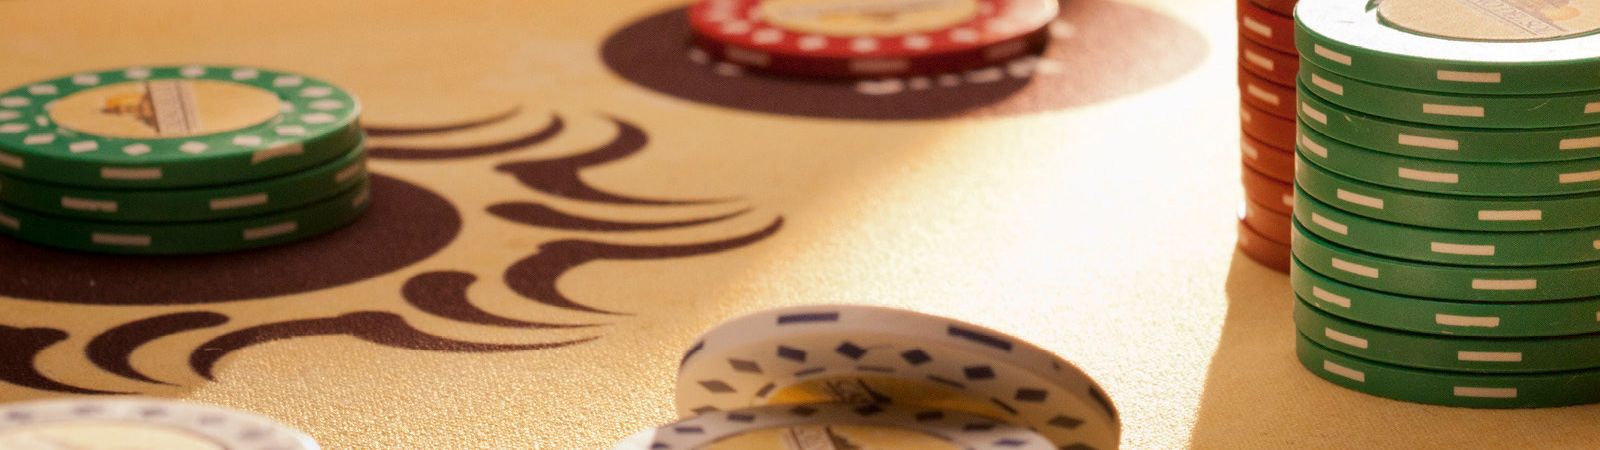 poker live apps casino del sol